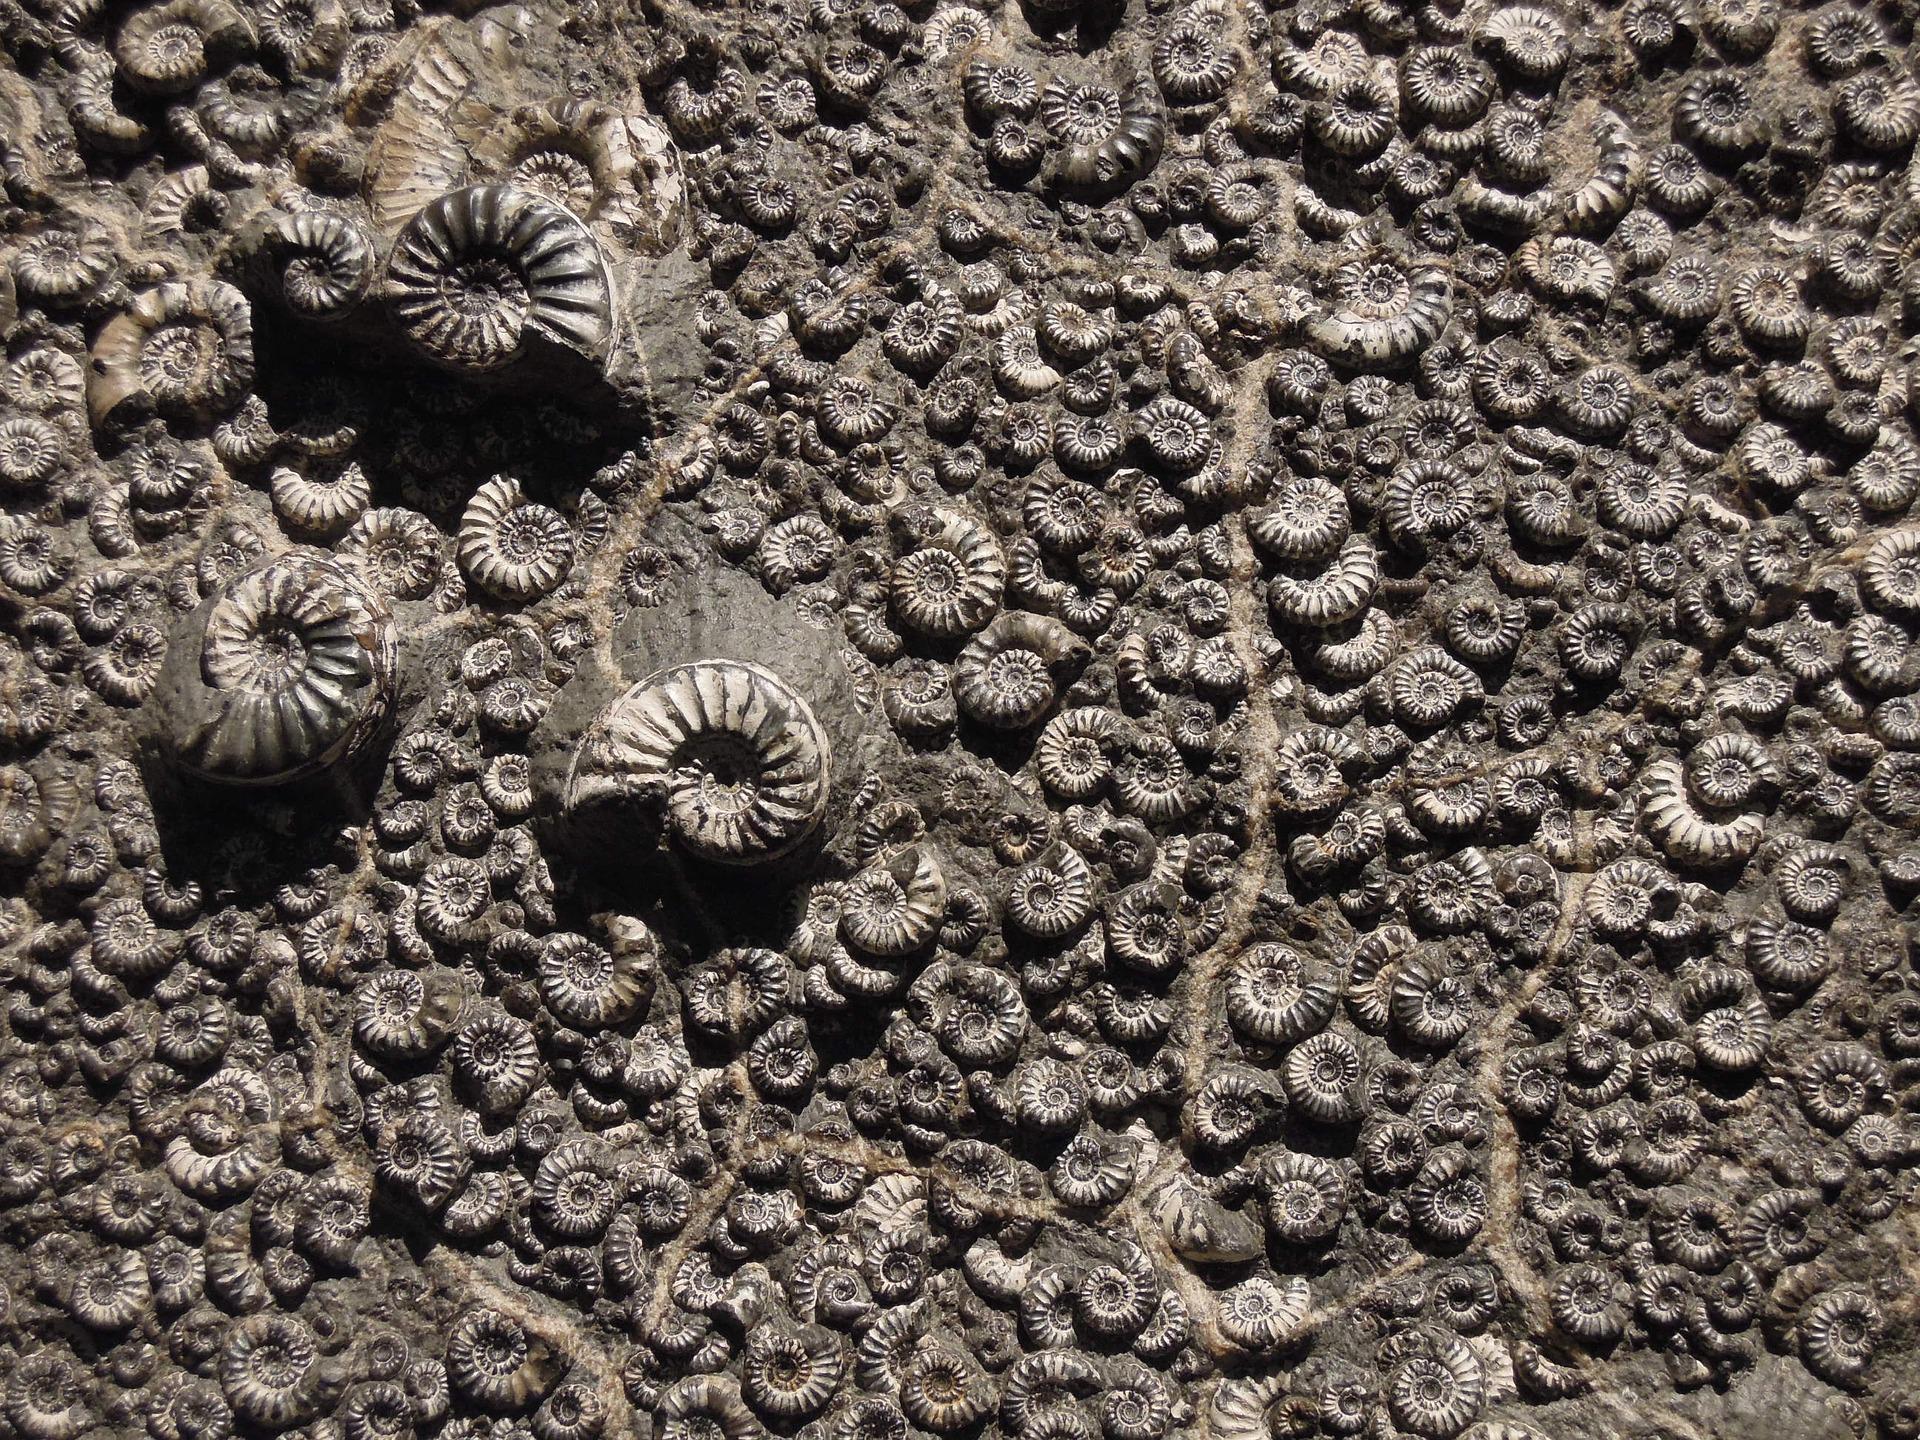 Des "fossiles fantômes" retrouvés au fond de l'océan !